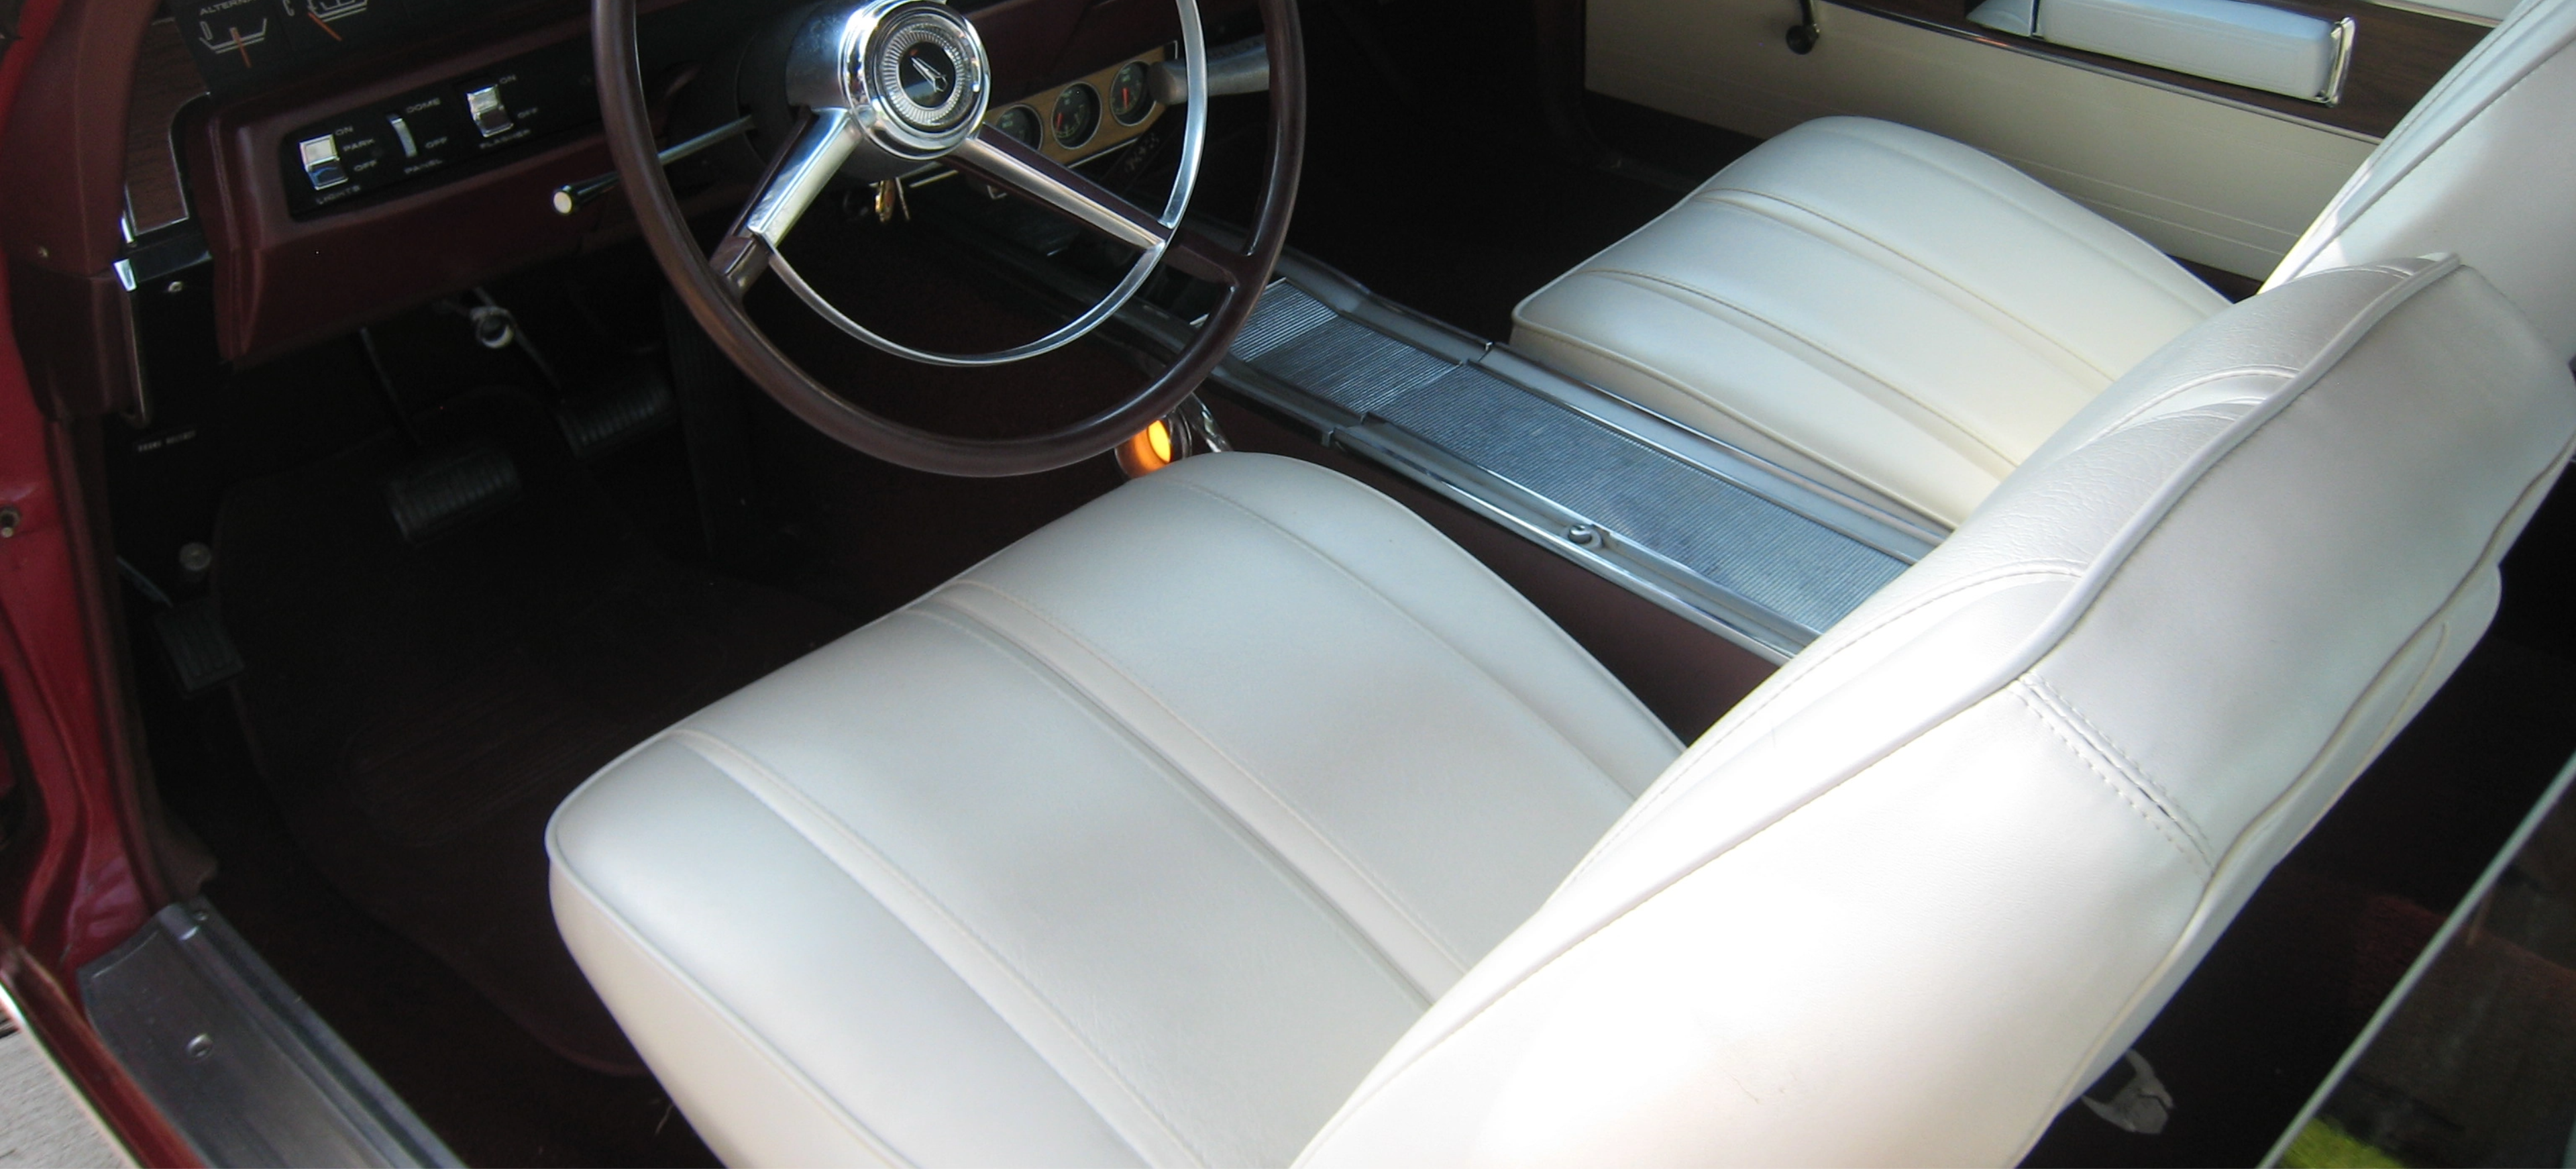 Original Auto Interiors Inc.